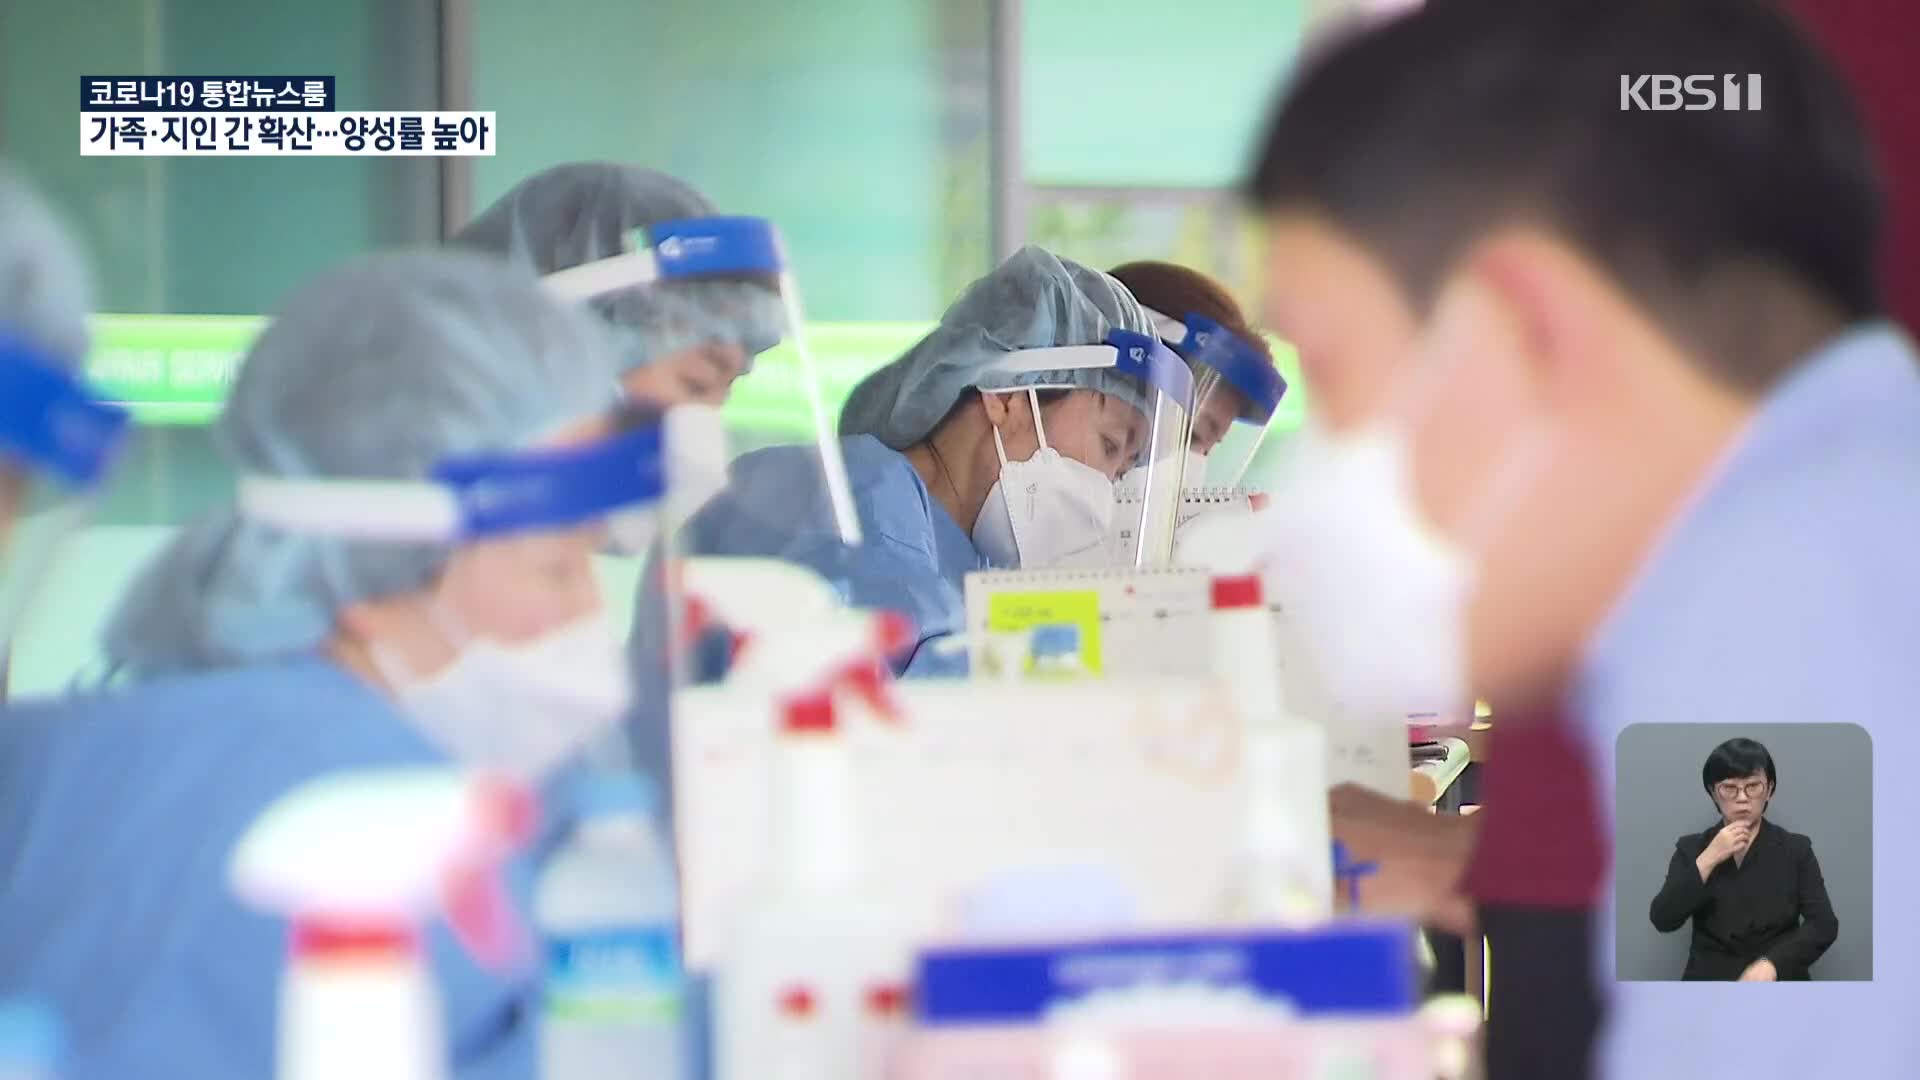 서울 ‘가족-지인 감염’에 확진자 최다 경신…양성률도 3%